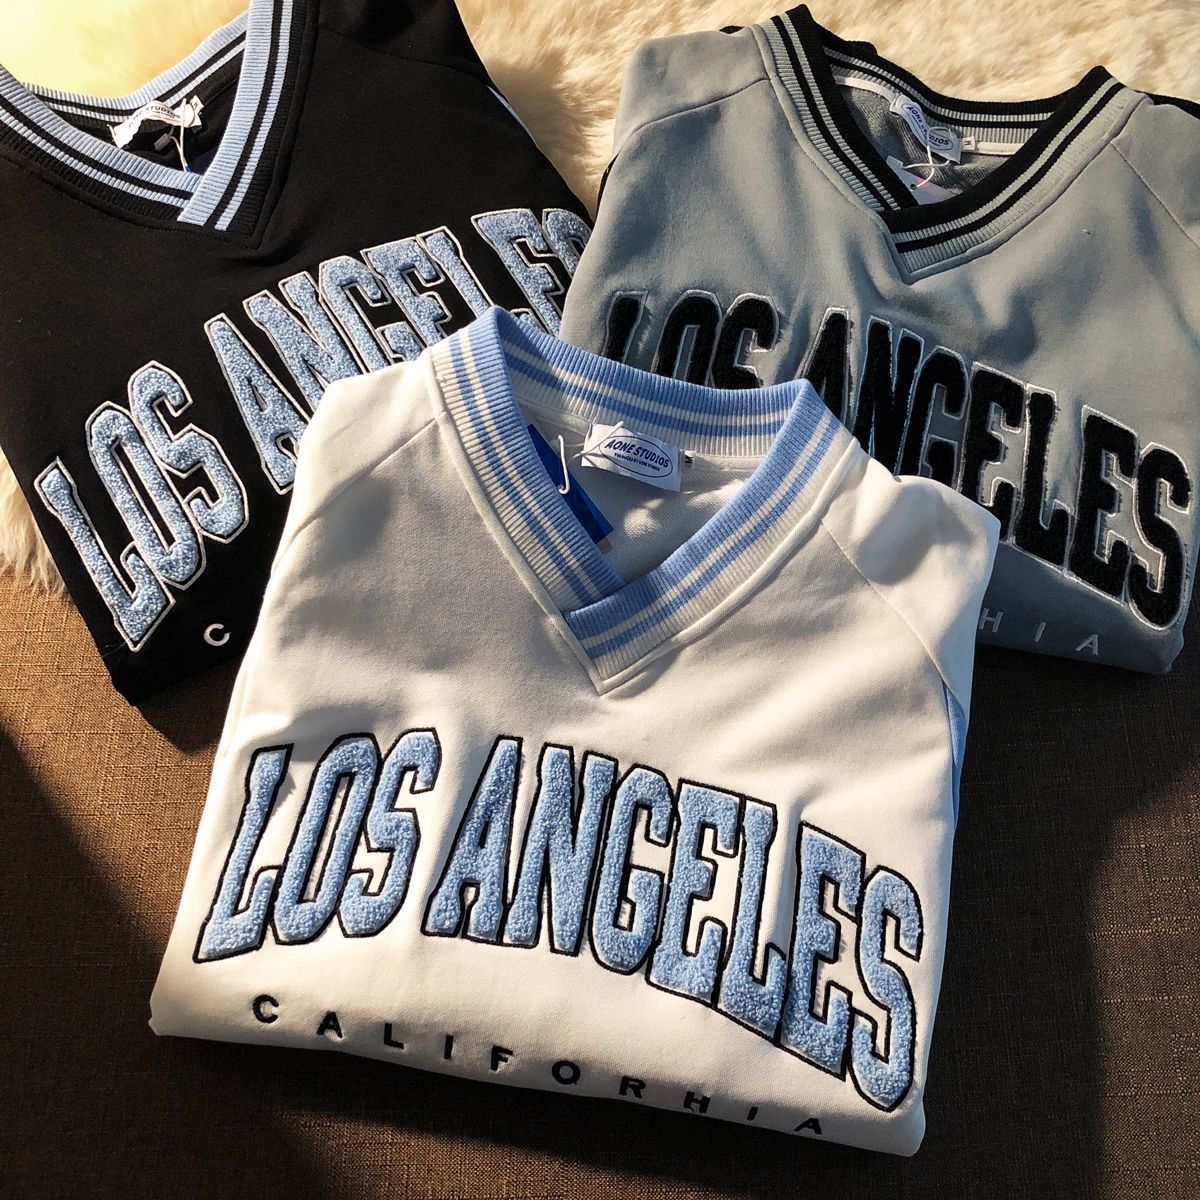 Vintage Los Angeles Dodgers Shirt Sweatshirt Hoodie